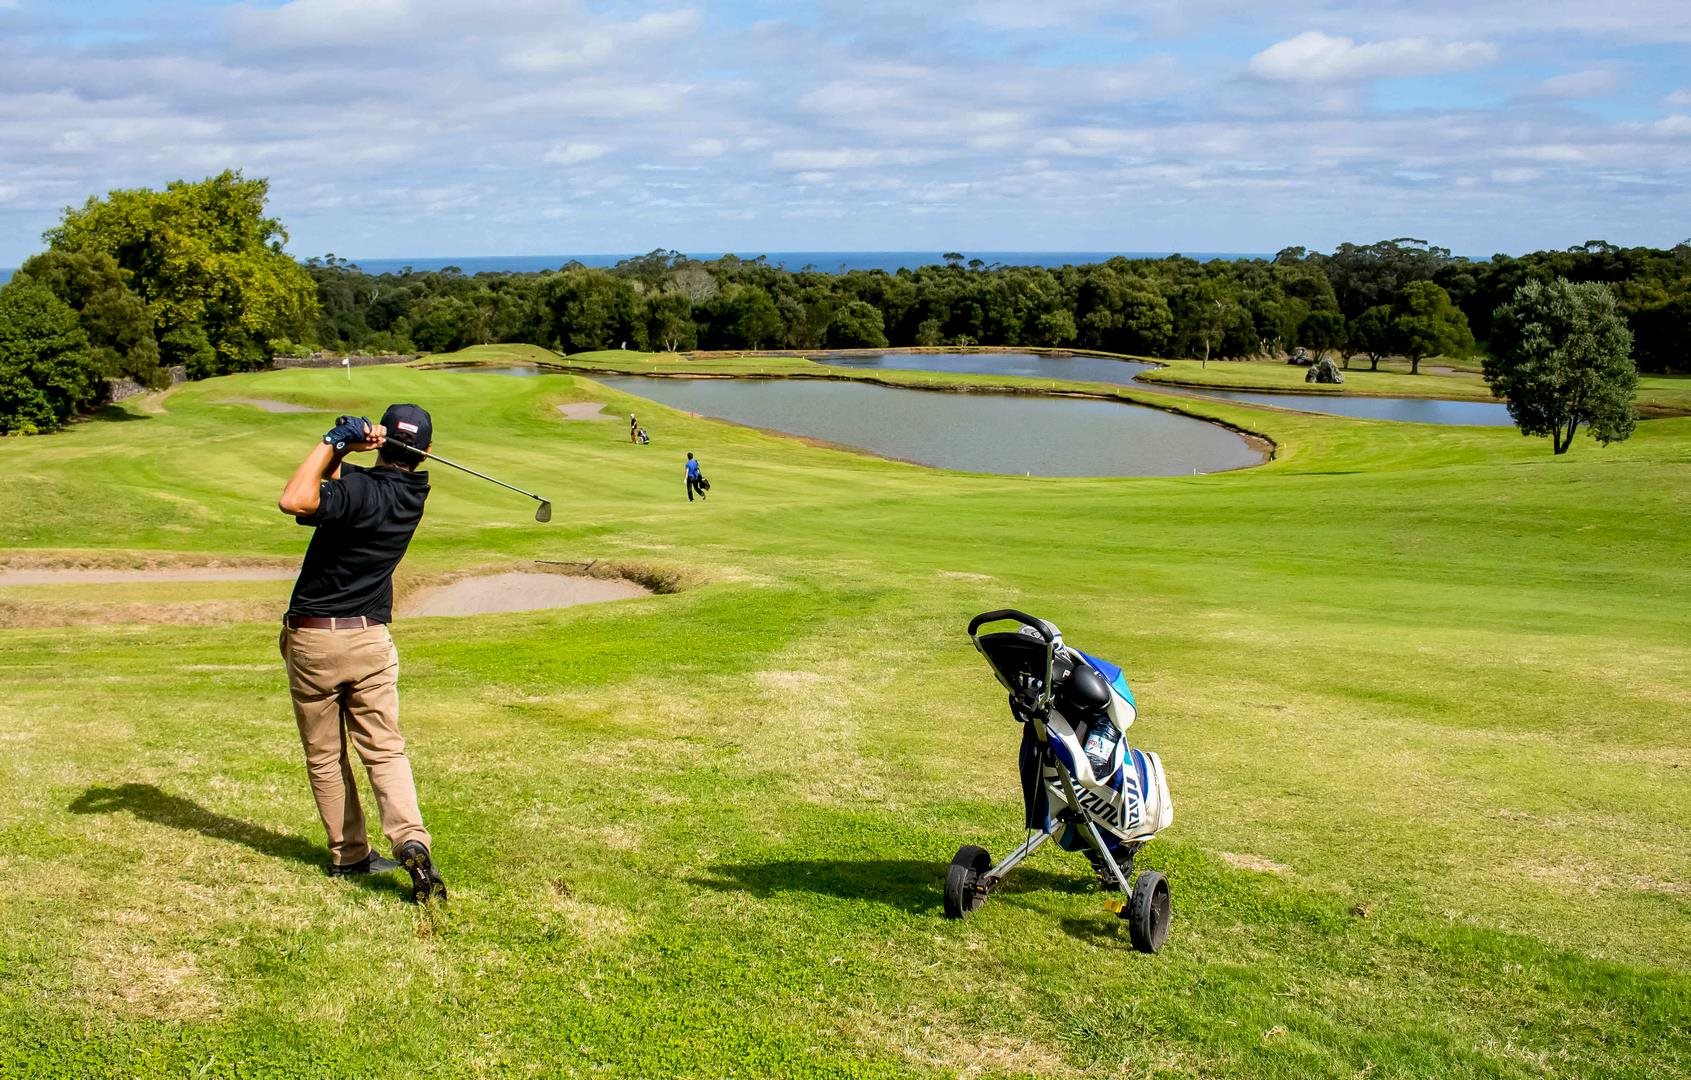 Batalha Golf Course 16 - São Miguel Island - edited